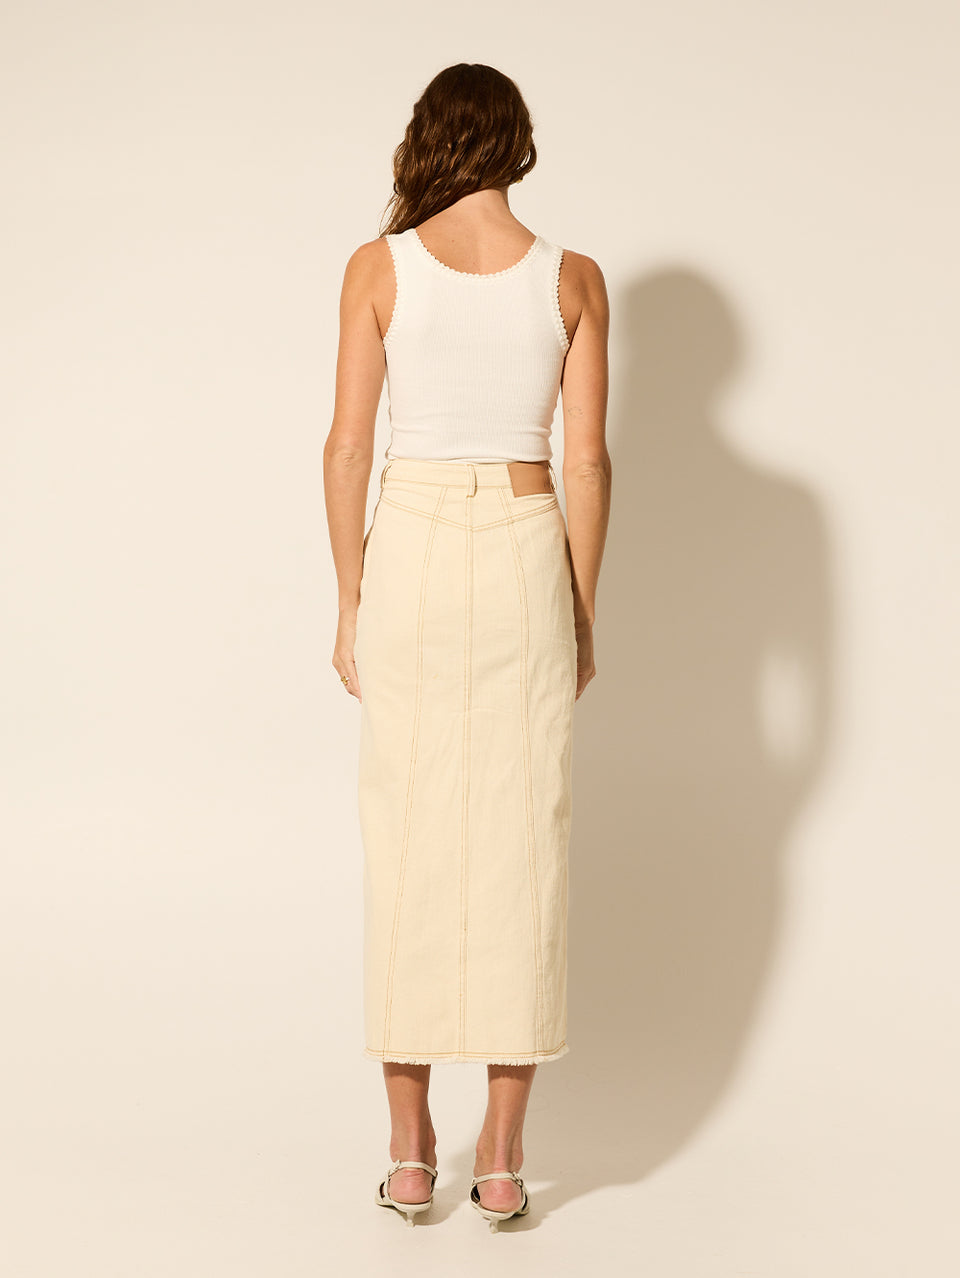 Elena Skirt Cream KIVARI | Model wears cream denim skirt back view